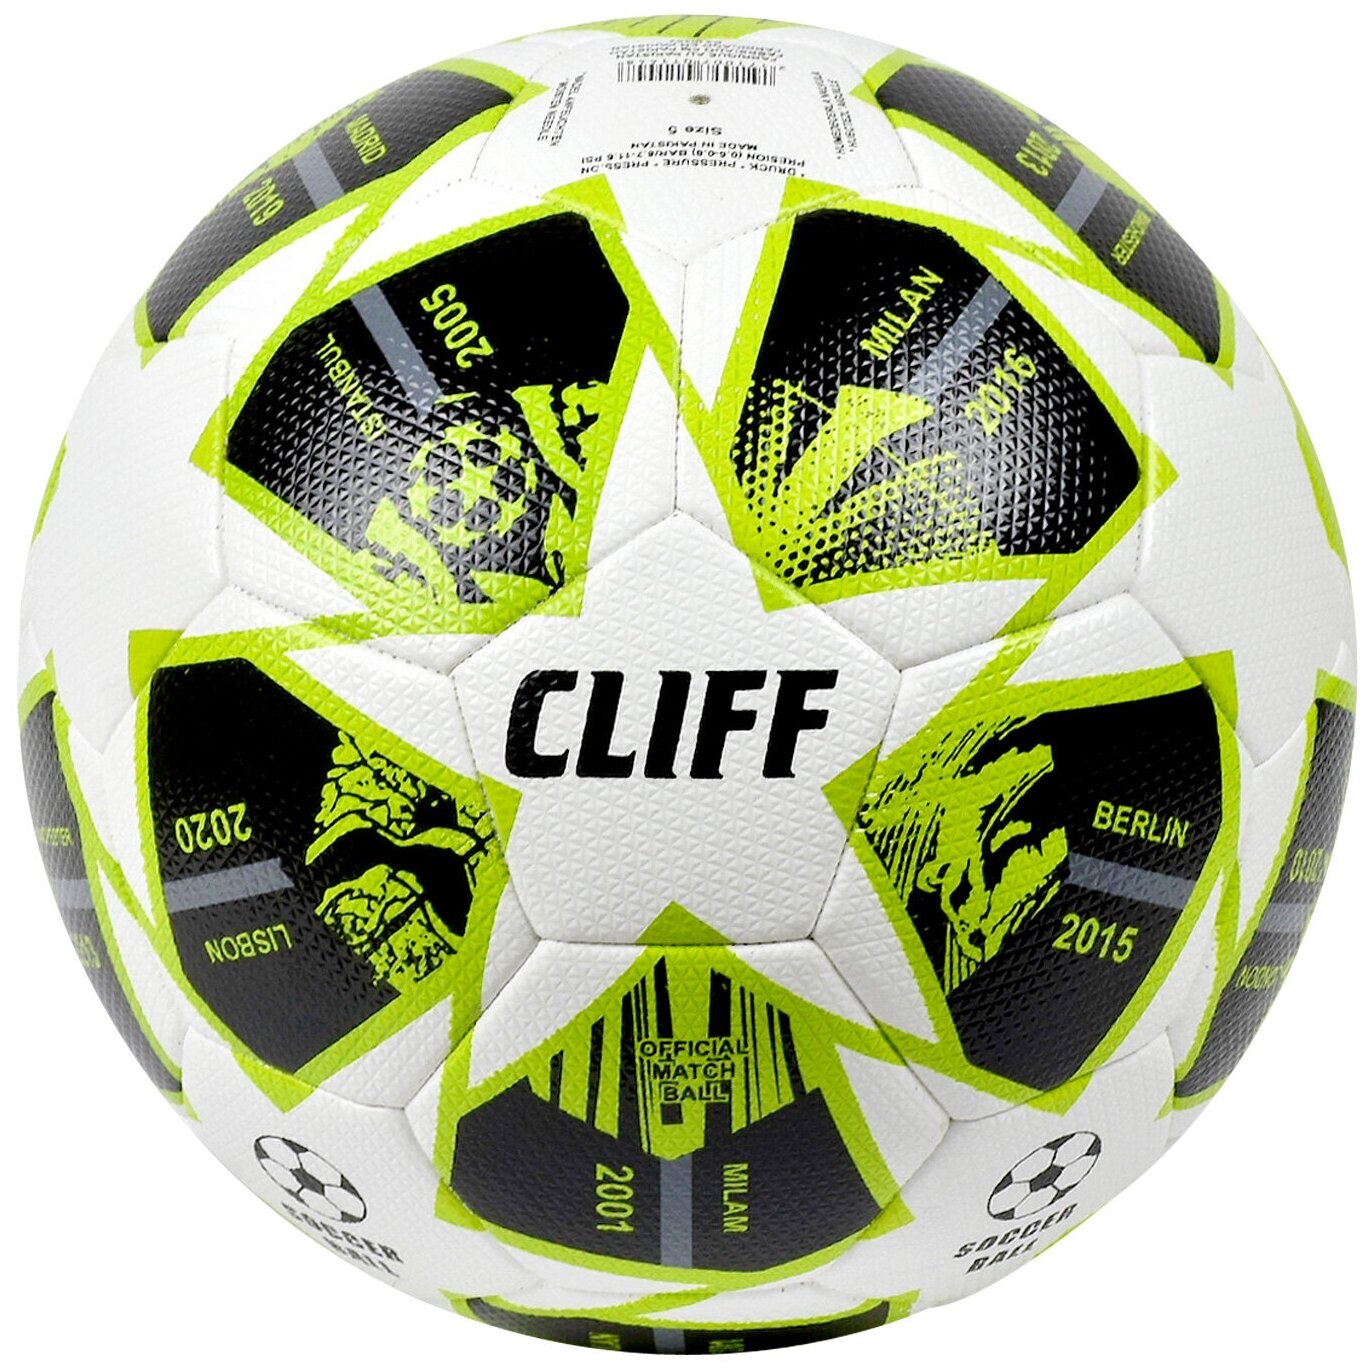 Мяч футбольный CLIFF 3232, 5 размер, PU Hibrid, бело-зелено-черный